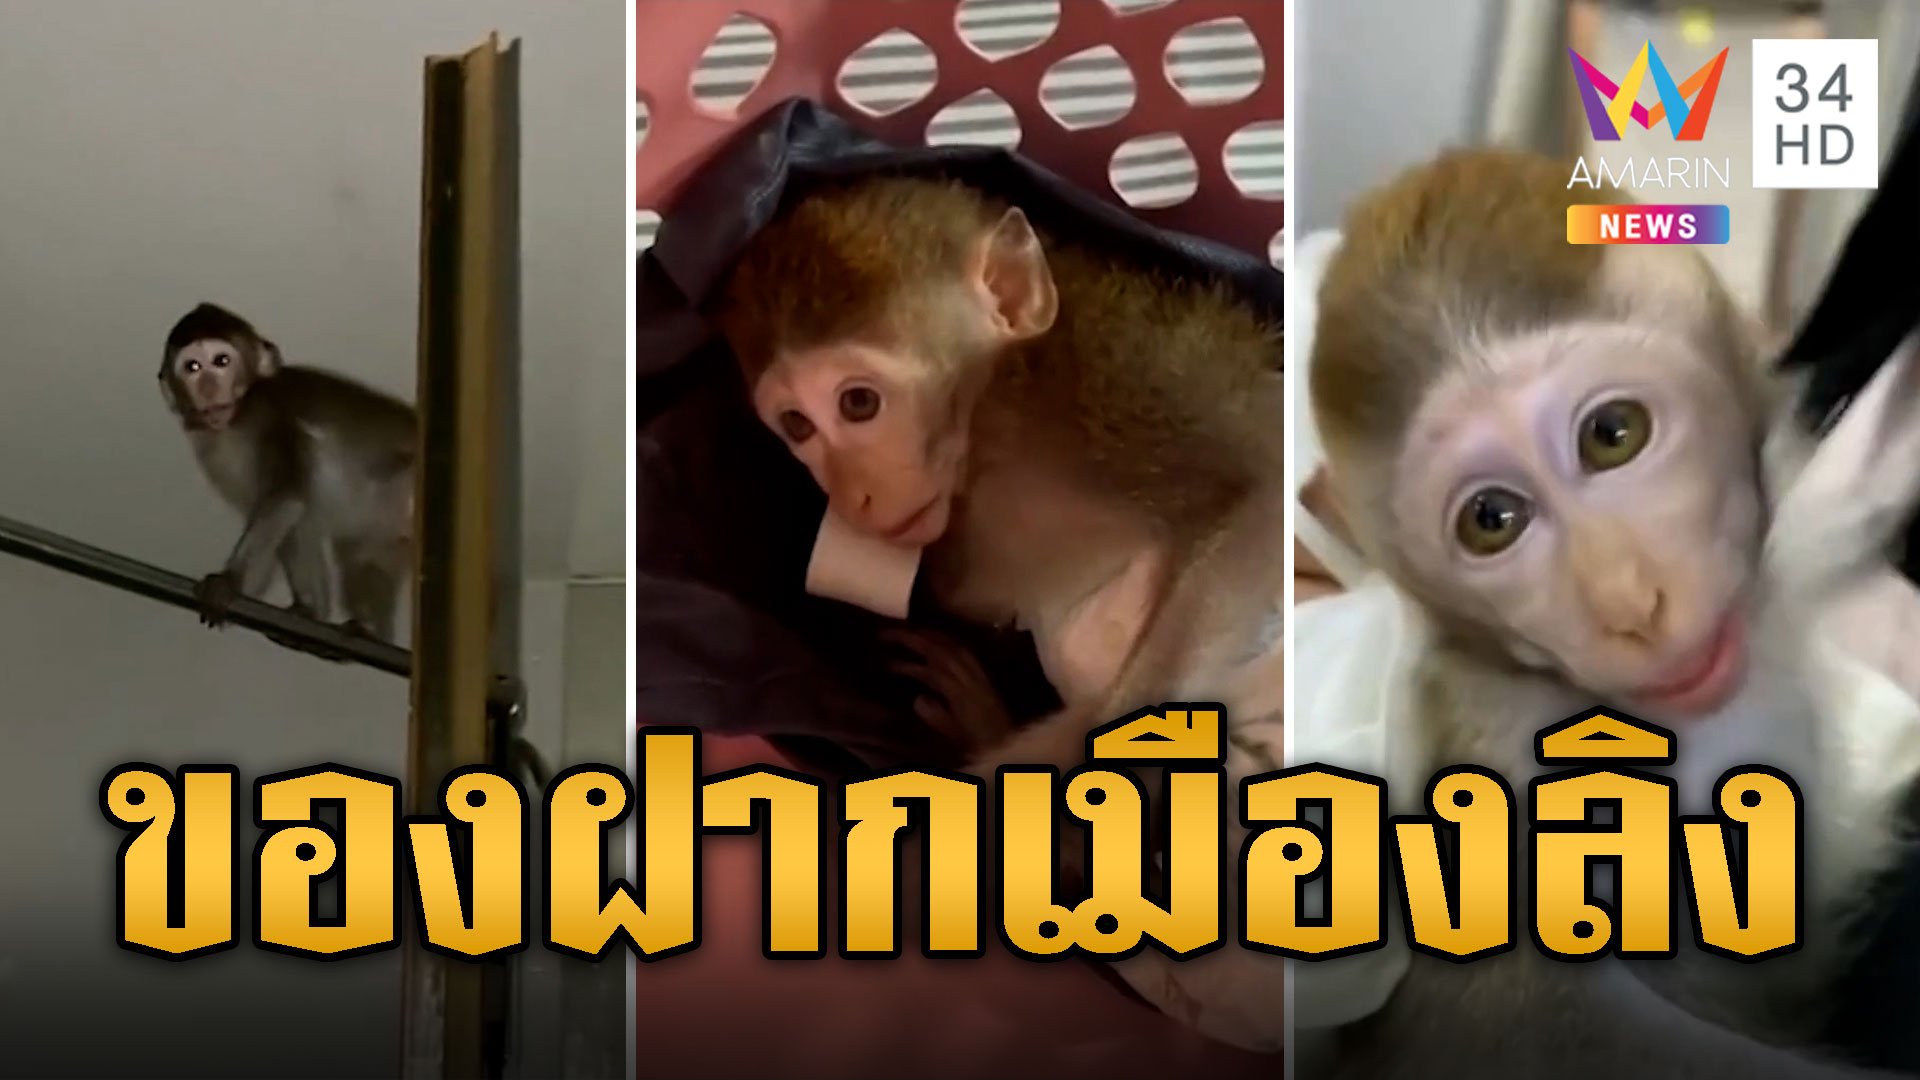 ของฝากเมืองลิง! ลิงเด็กติดรถจากลพบุรีมา กทม.ต้องกลับเอาไปฝากไว้ | ข่าวเที่ยงอมรินทร์ | 26 ม.ค. 67 | AMARIN TVHD34